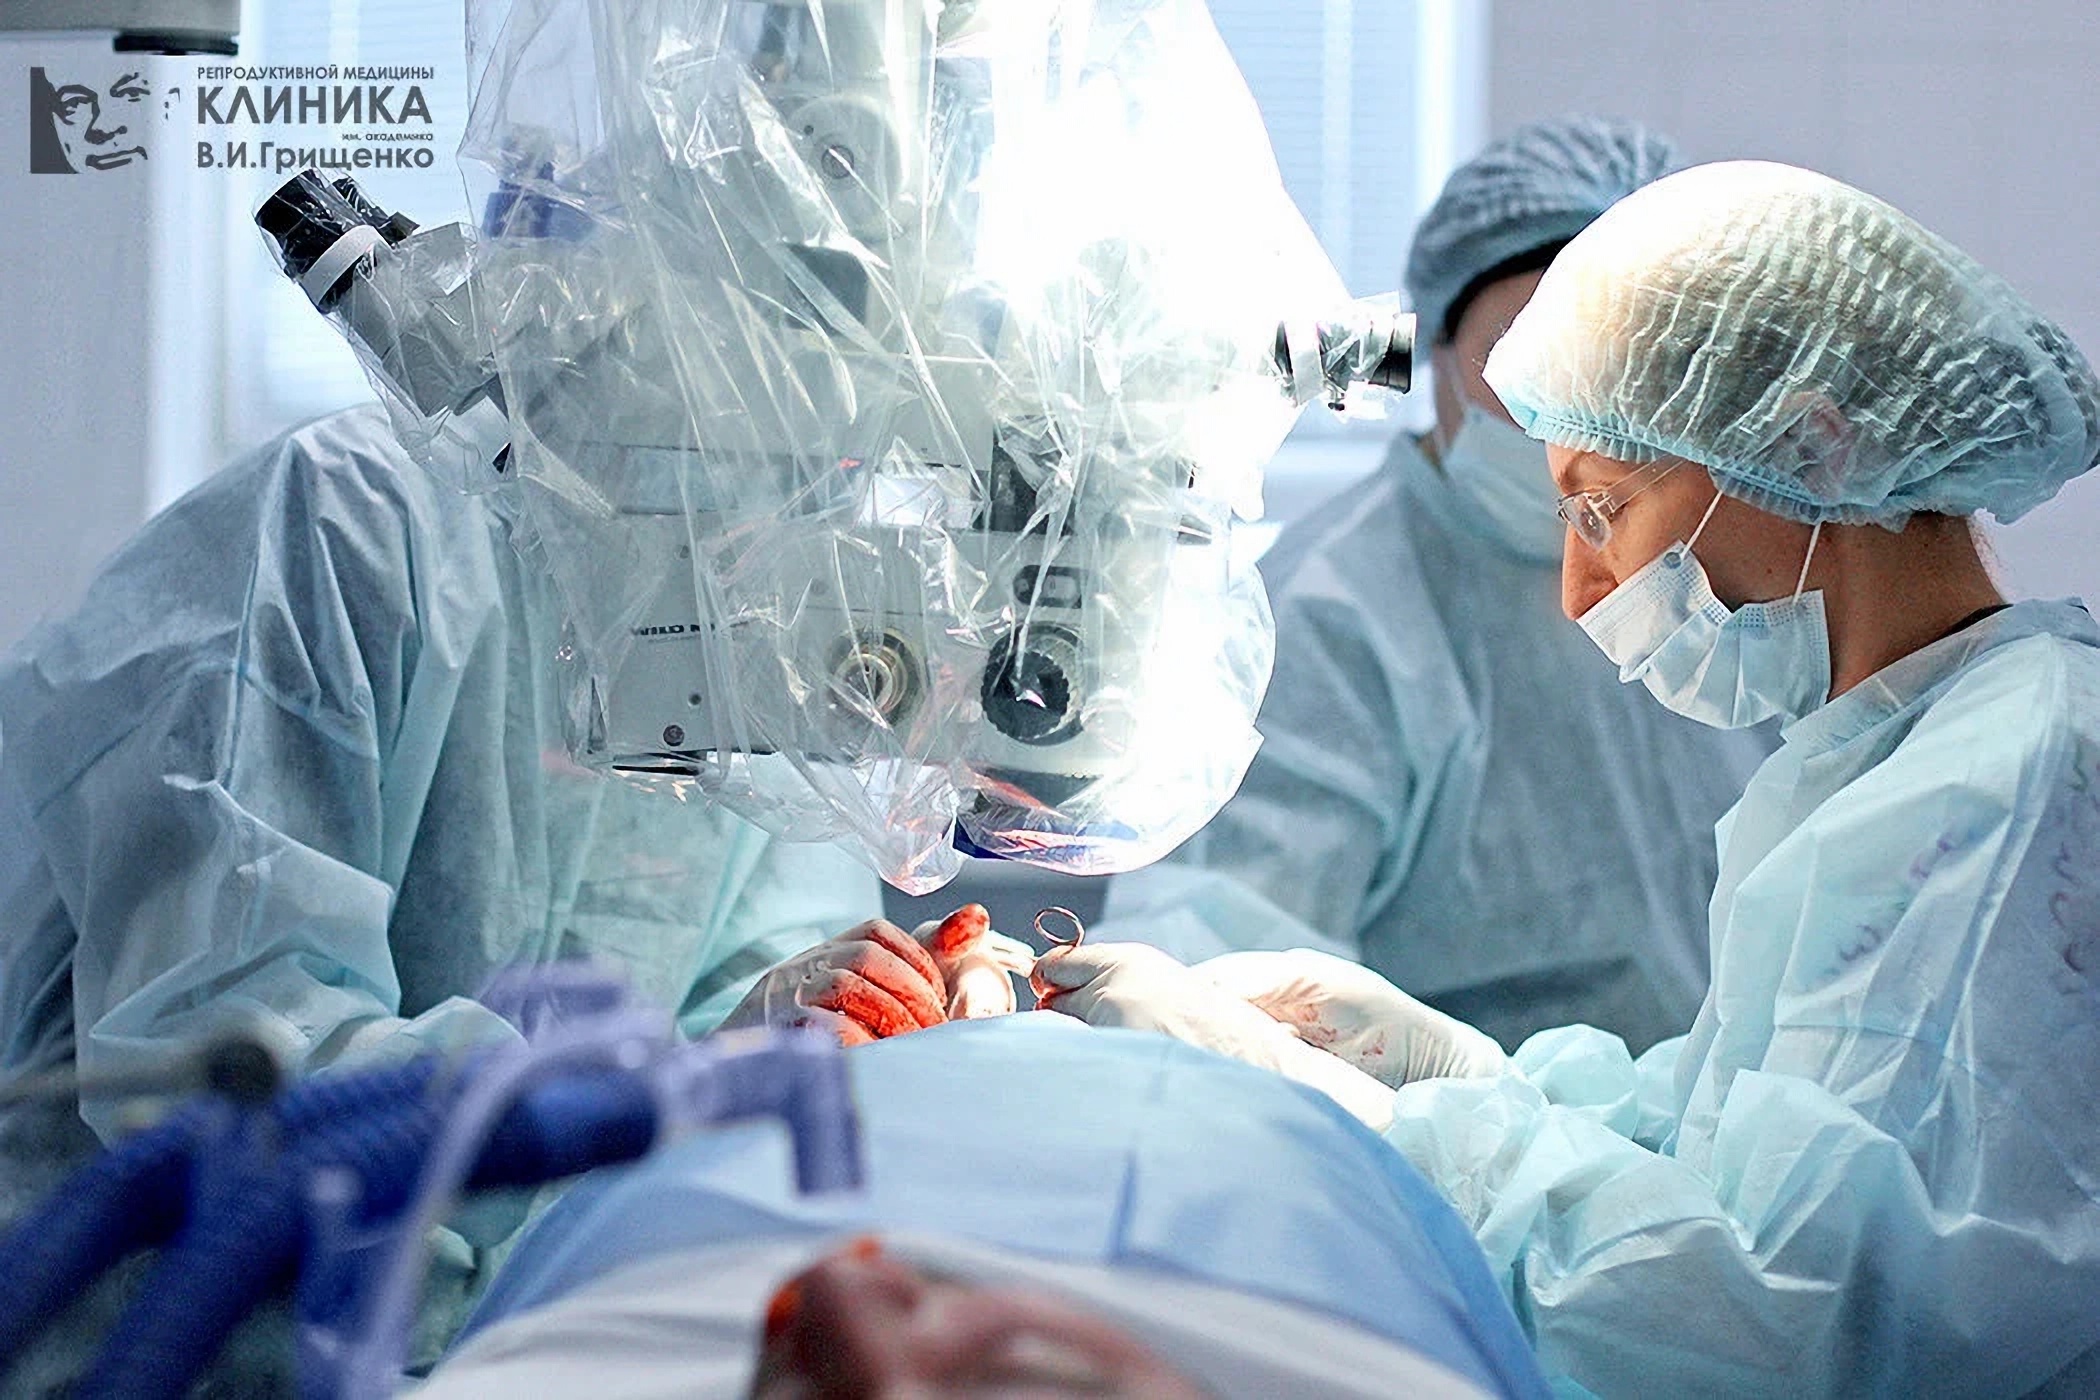 Chirurgia ginekologiczna w Klinice Gryschenko Lwów Ukraina